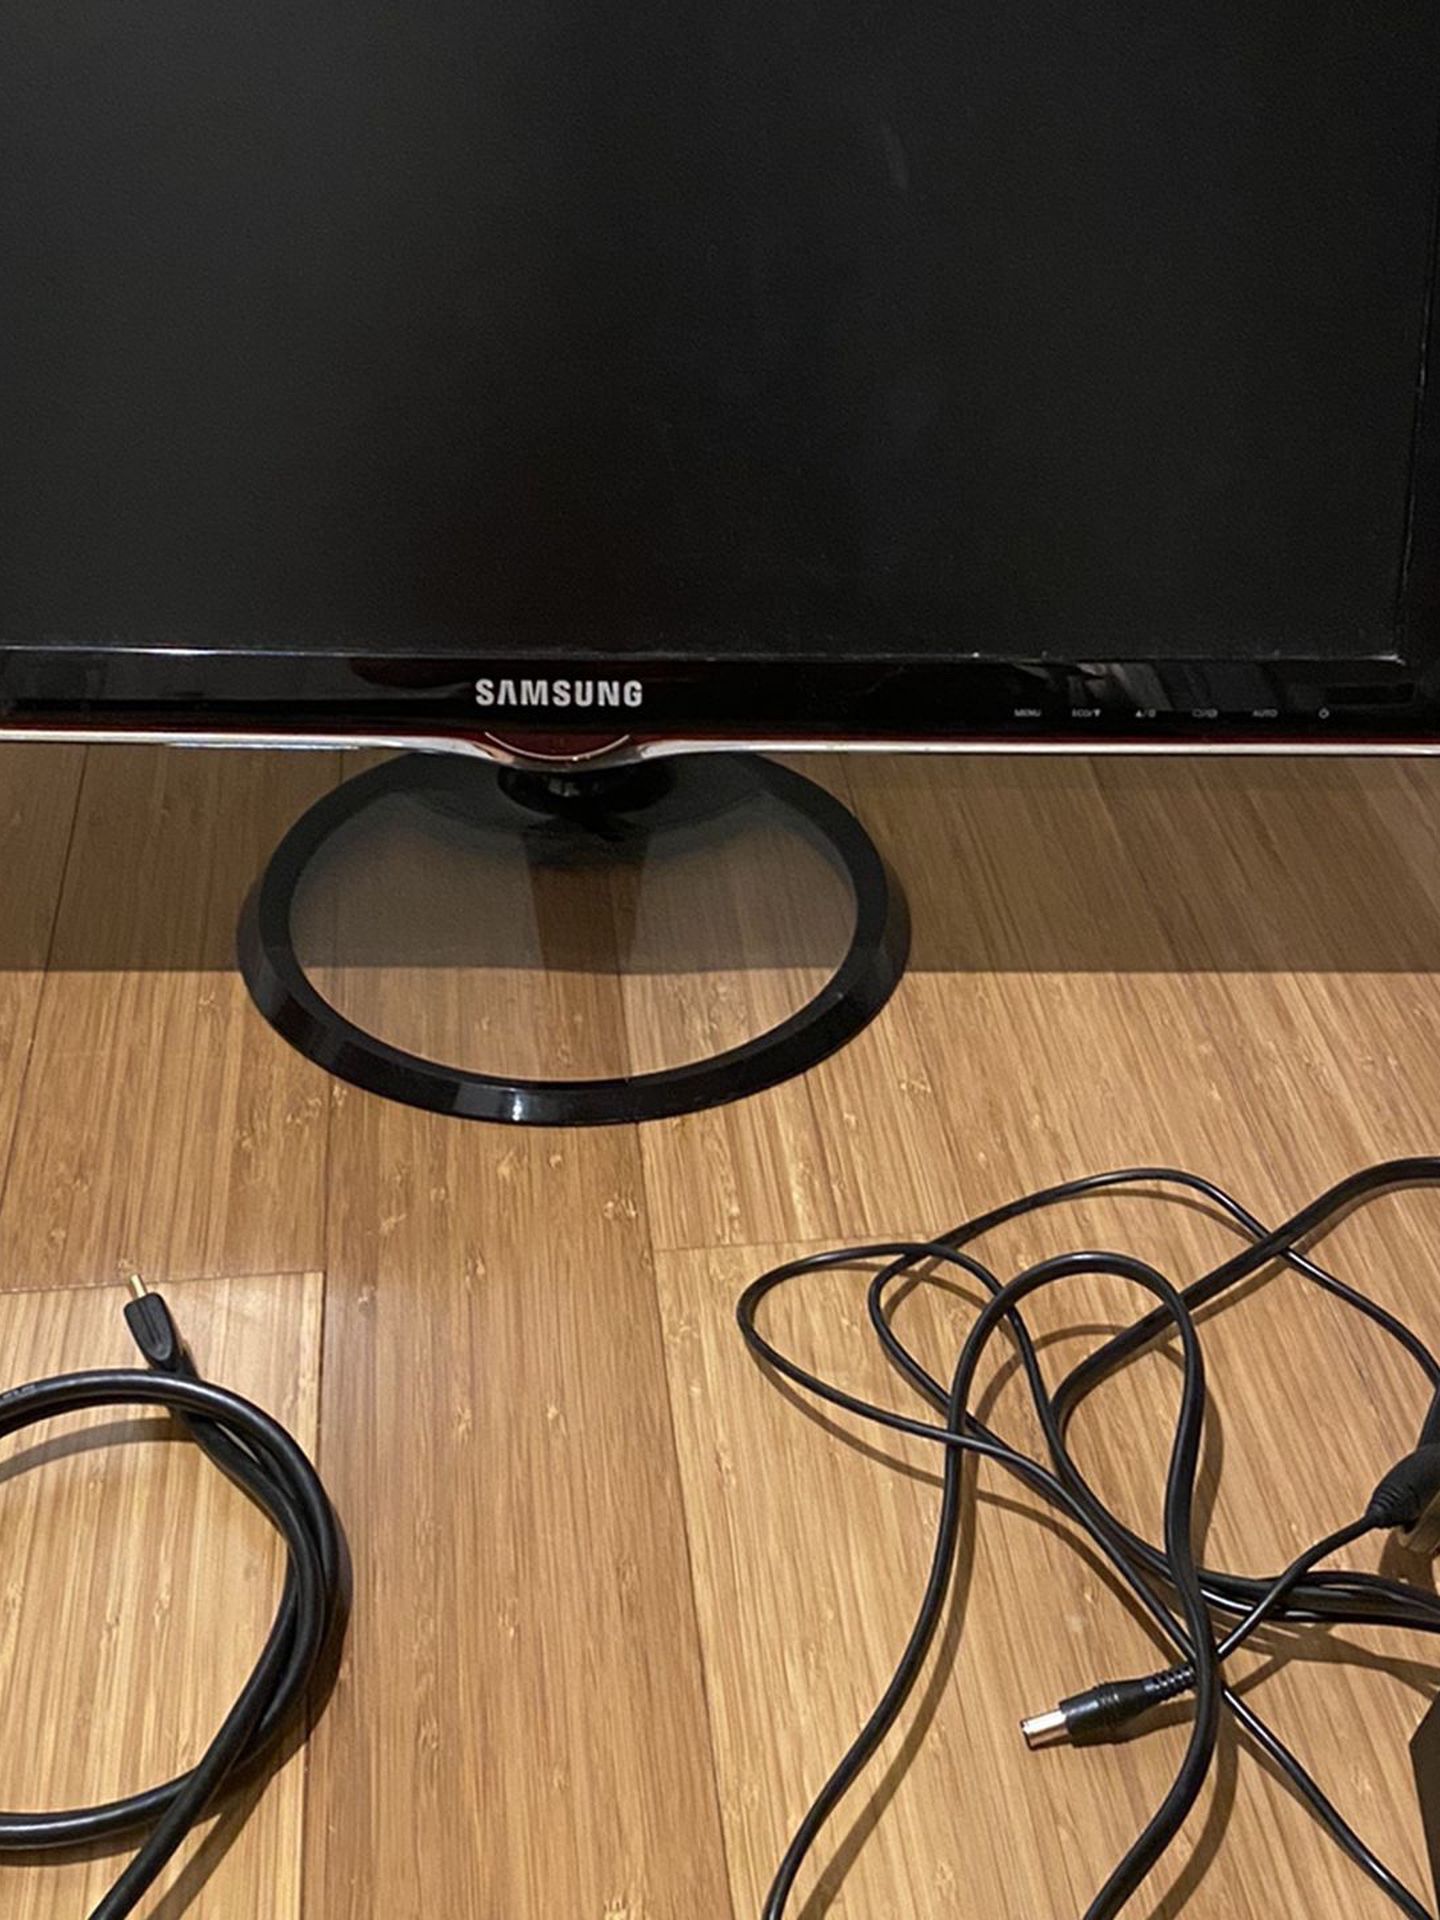 Samsung LED HDMI Monitor